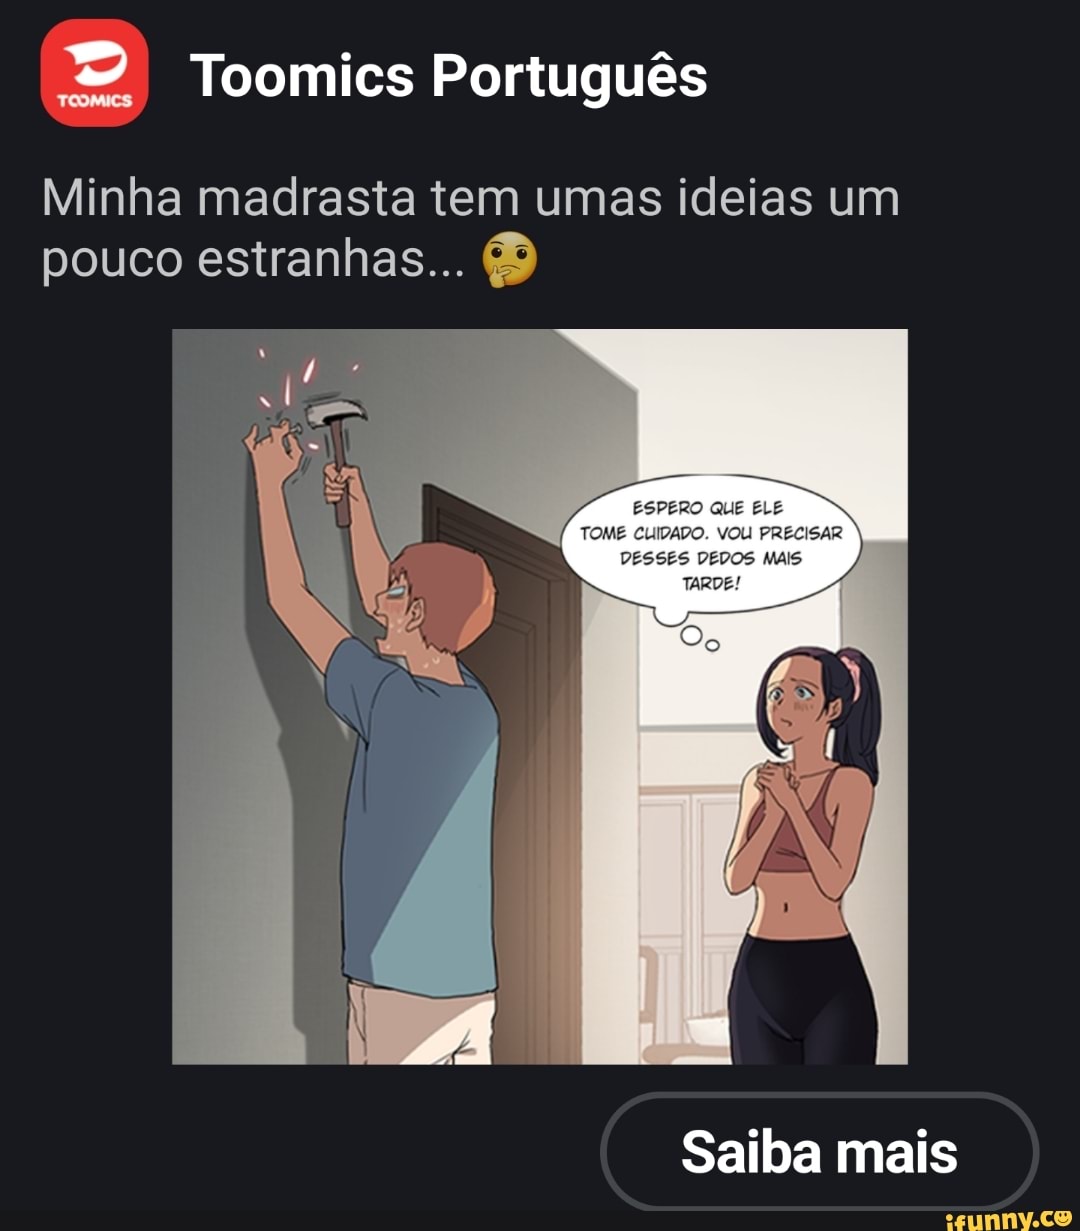 Toomics Português Minha madrasta tem umas ideias um pouco estranhas... as  Saiba mais - iFunny Brazil